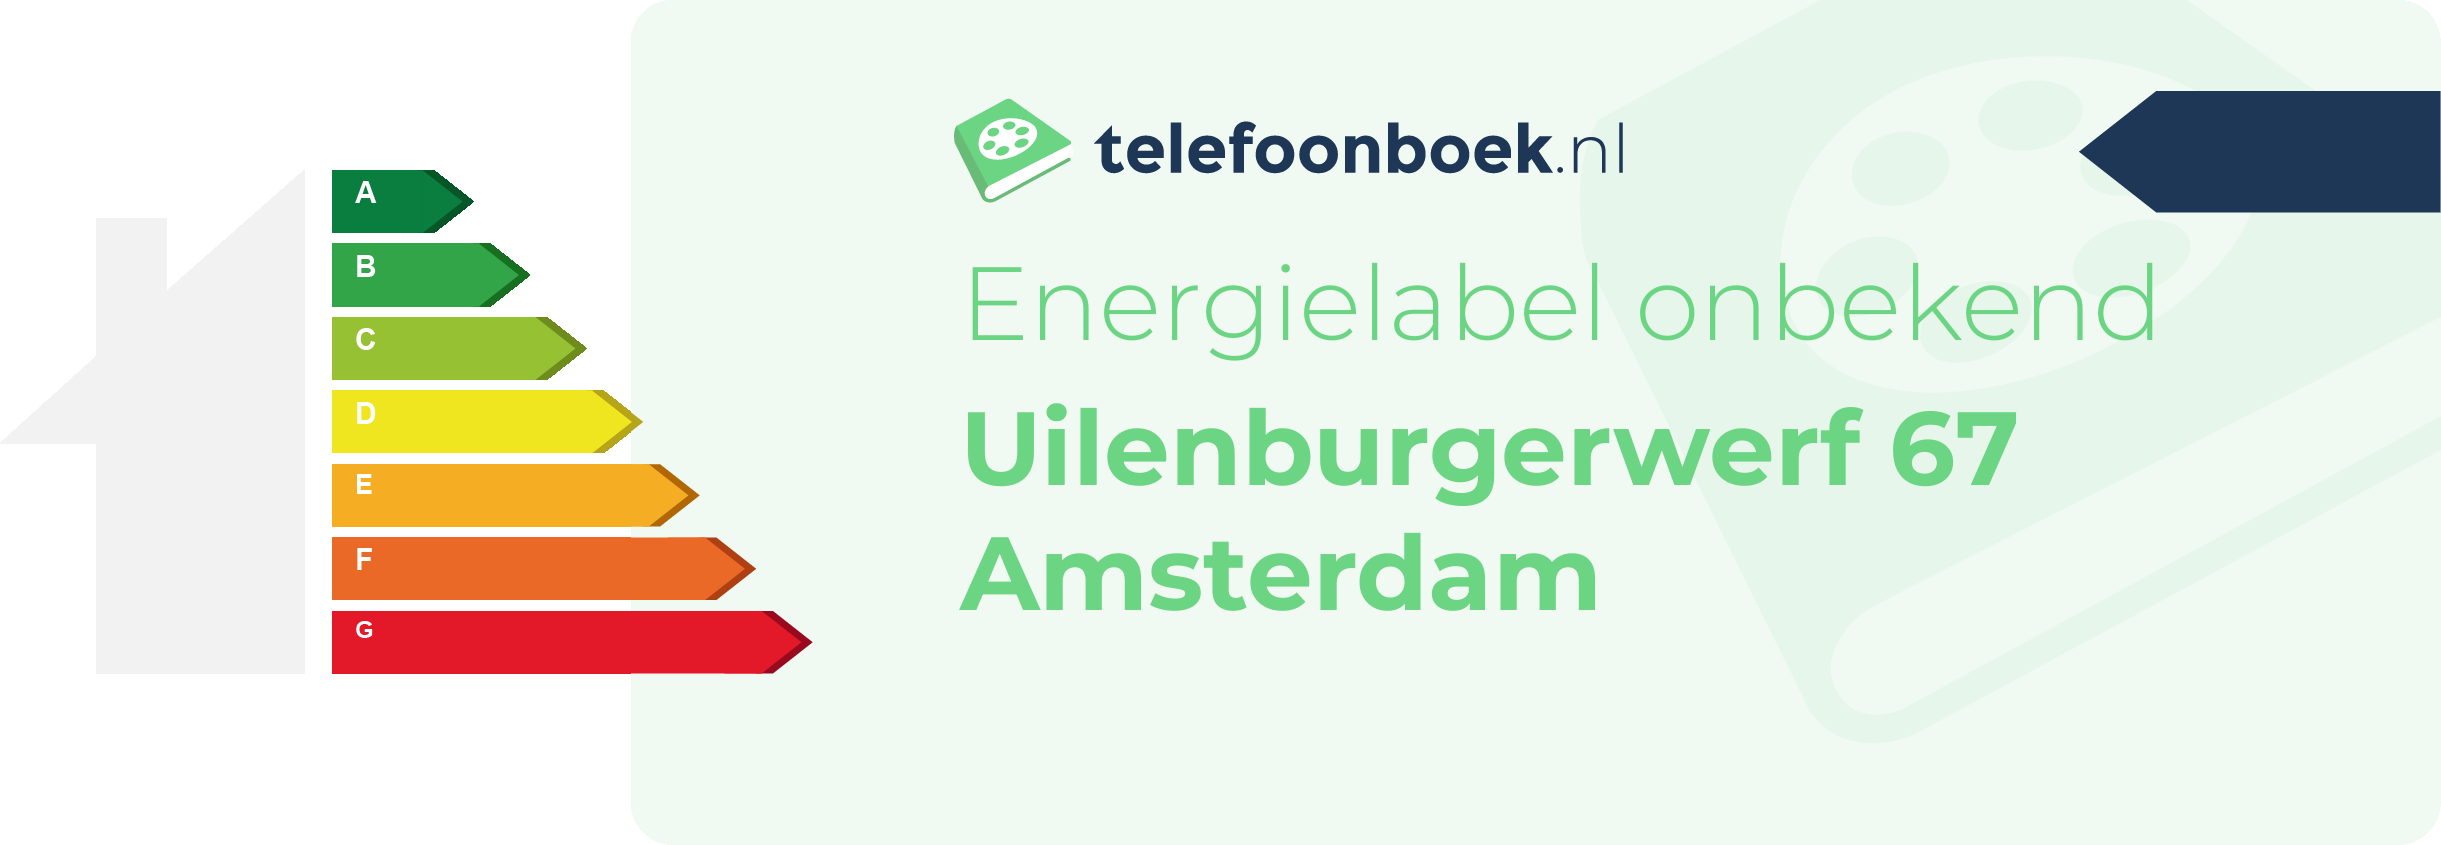 Energielabel Uilenburgerwerf 67 Amsterdam